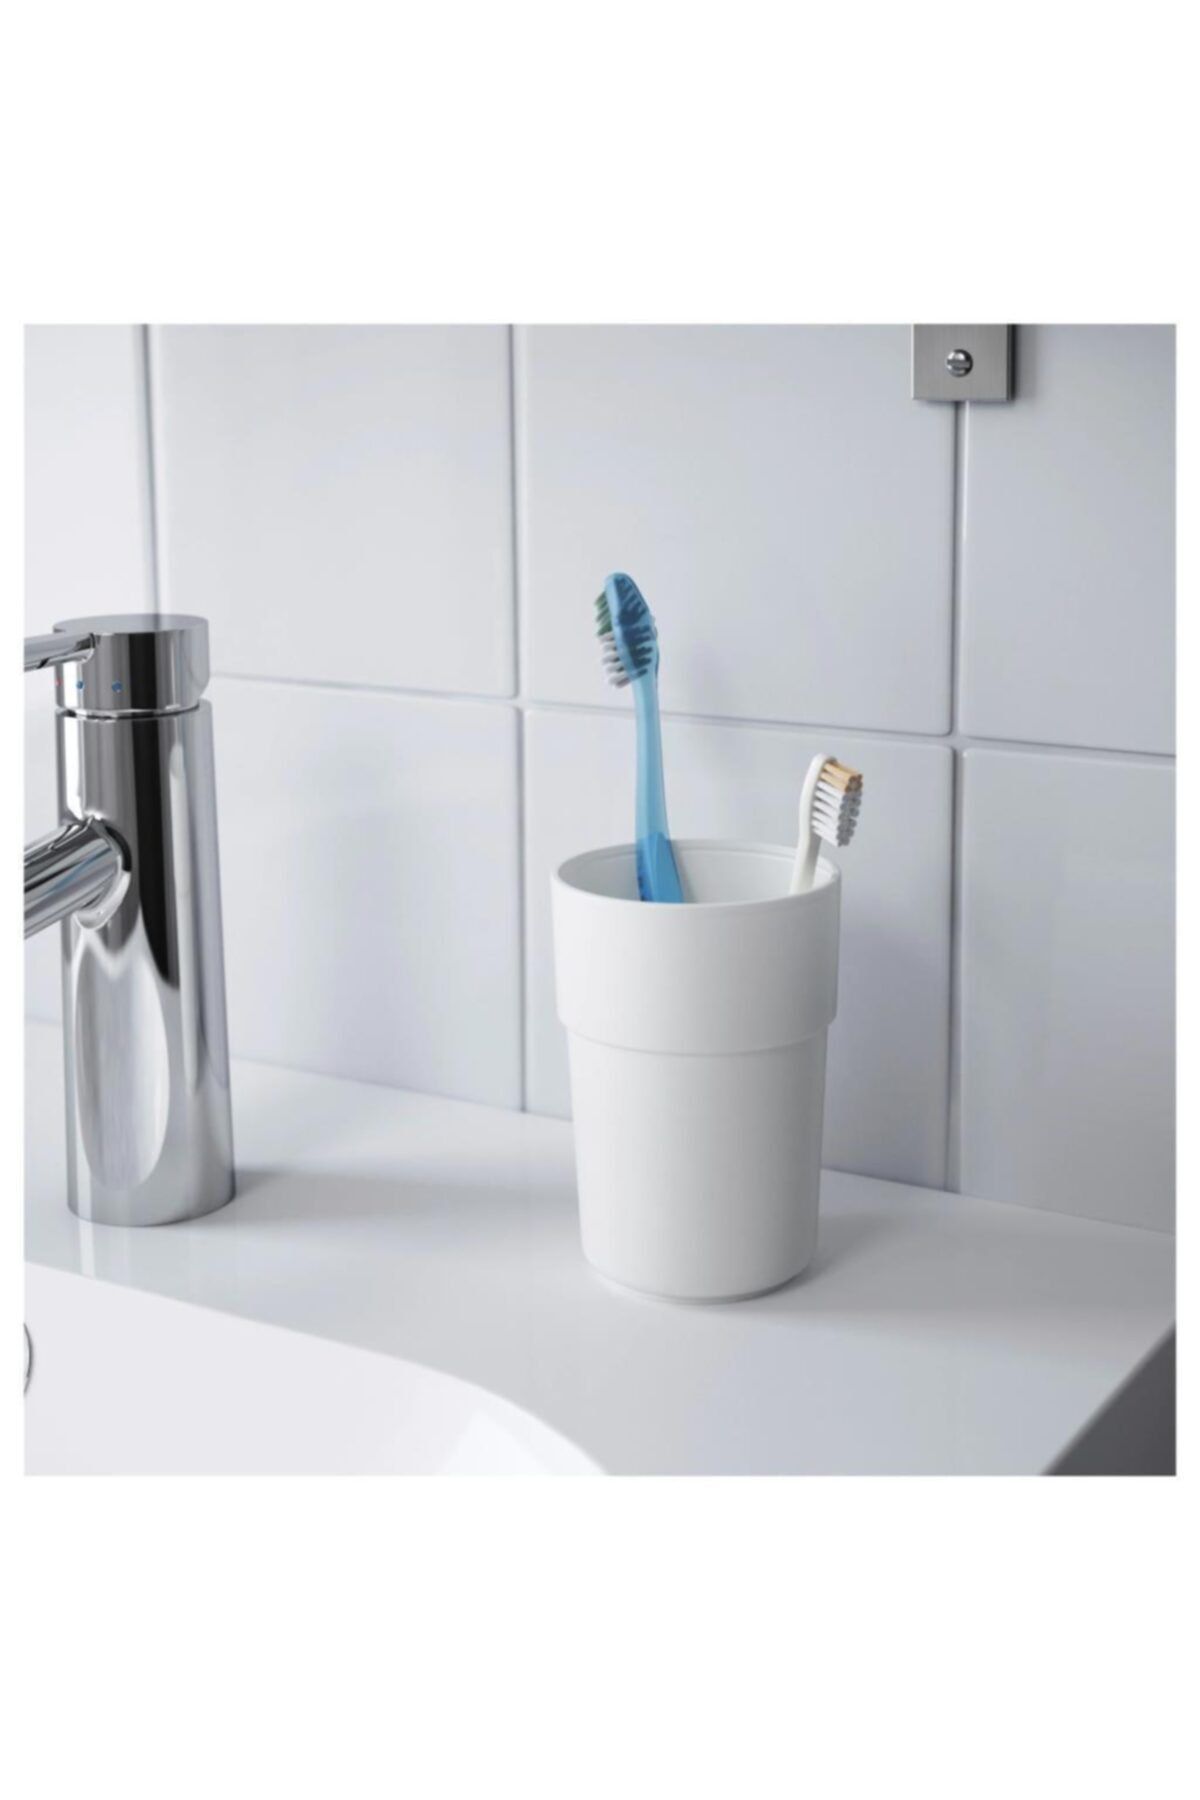 BARBUN Enudden Plastik Diş Fırçalık Banyo Bardağı Beyaz Kargo Bedava